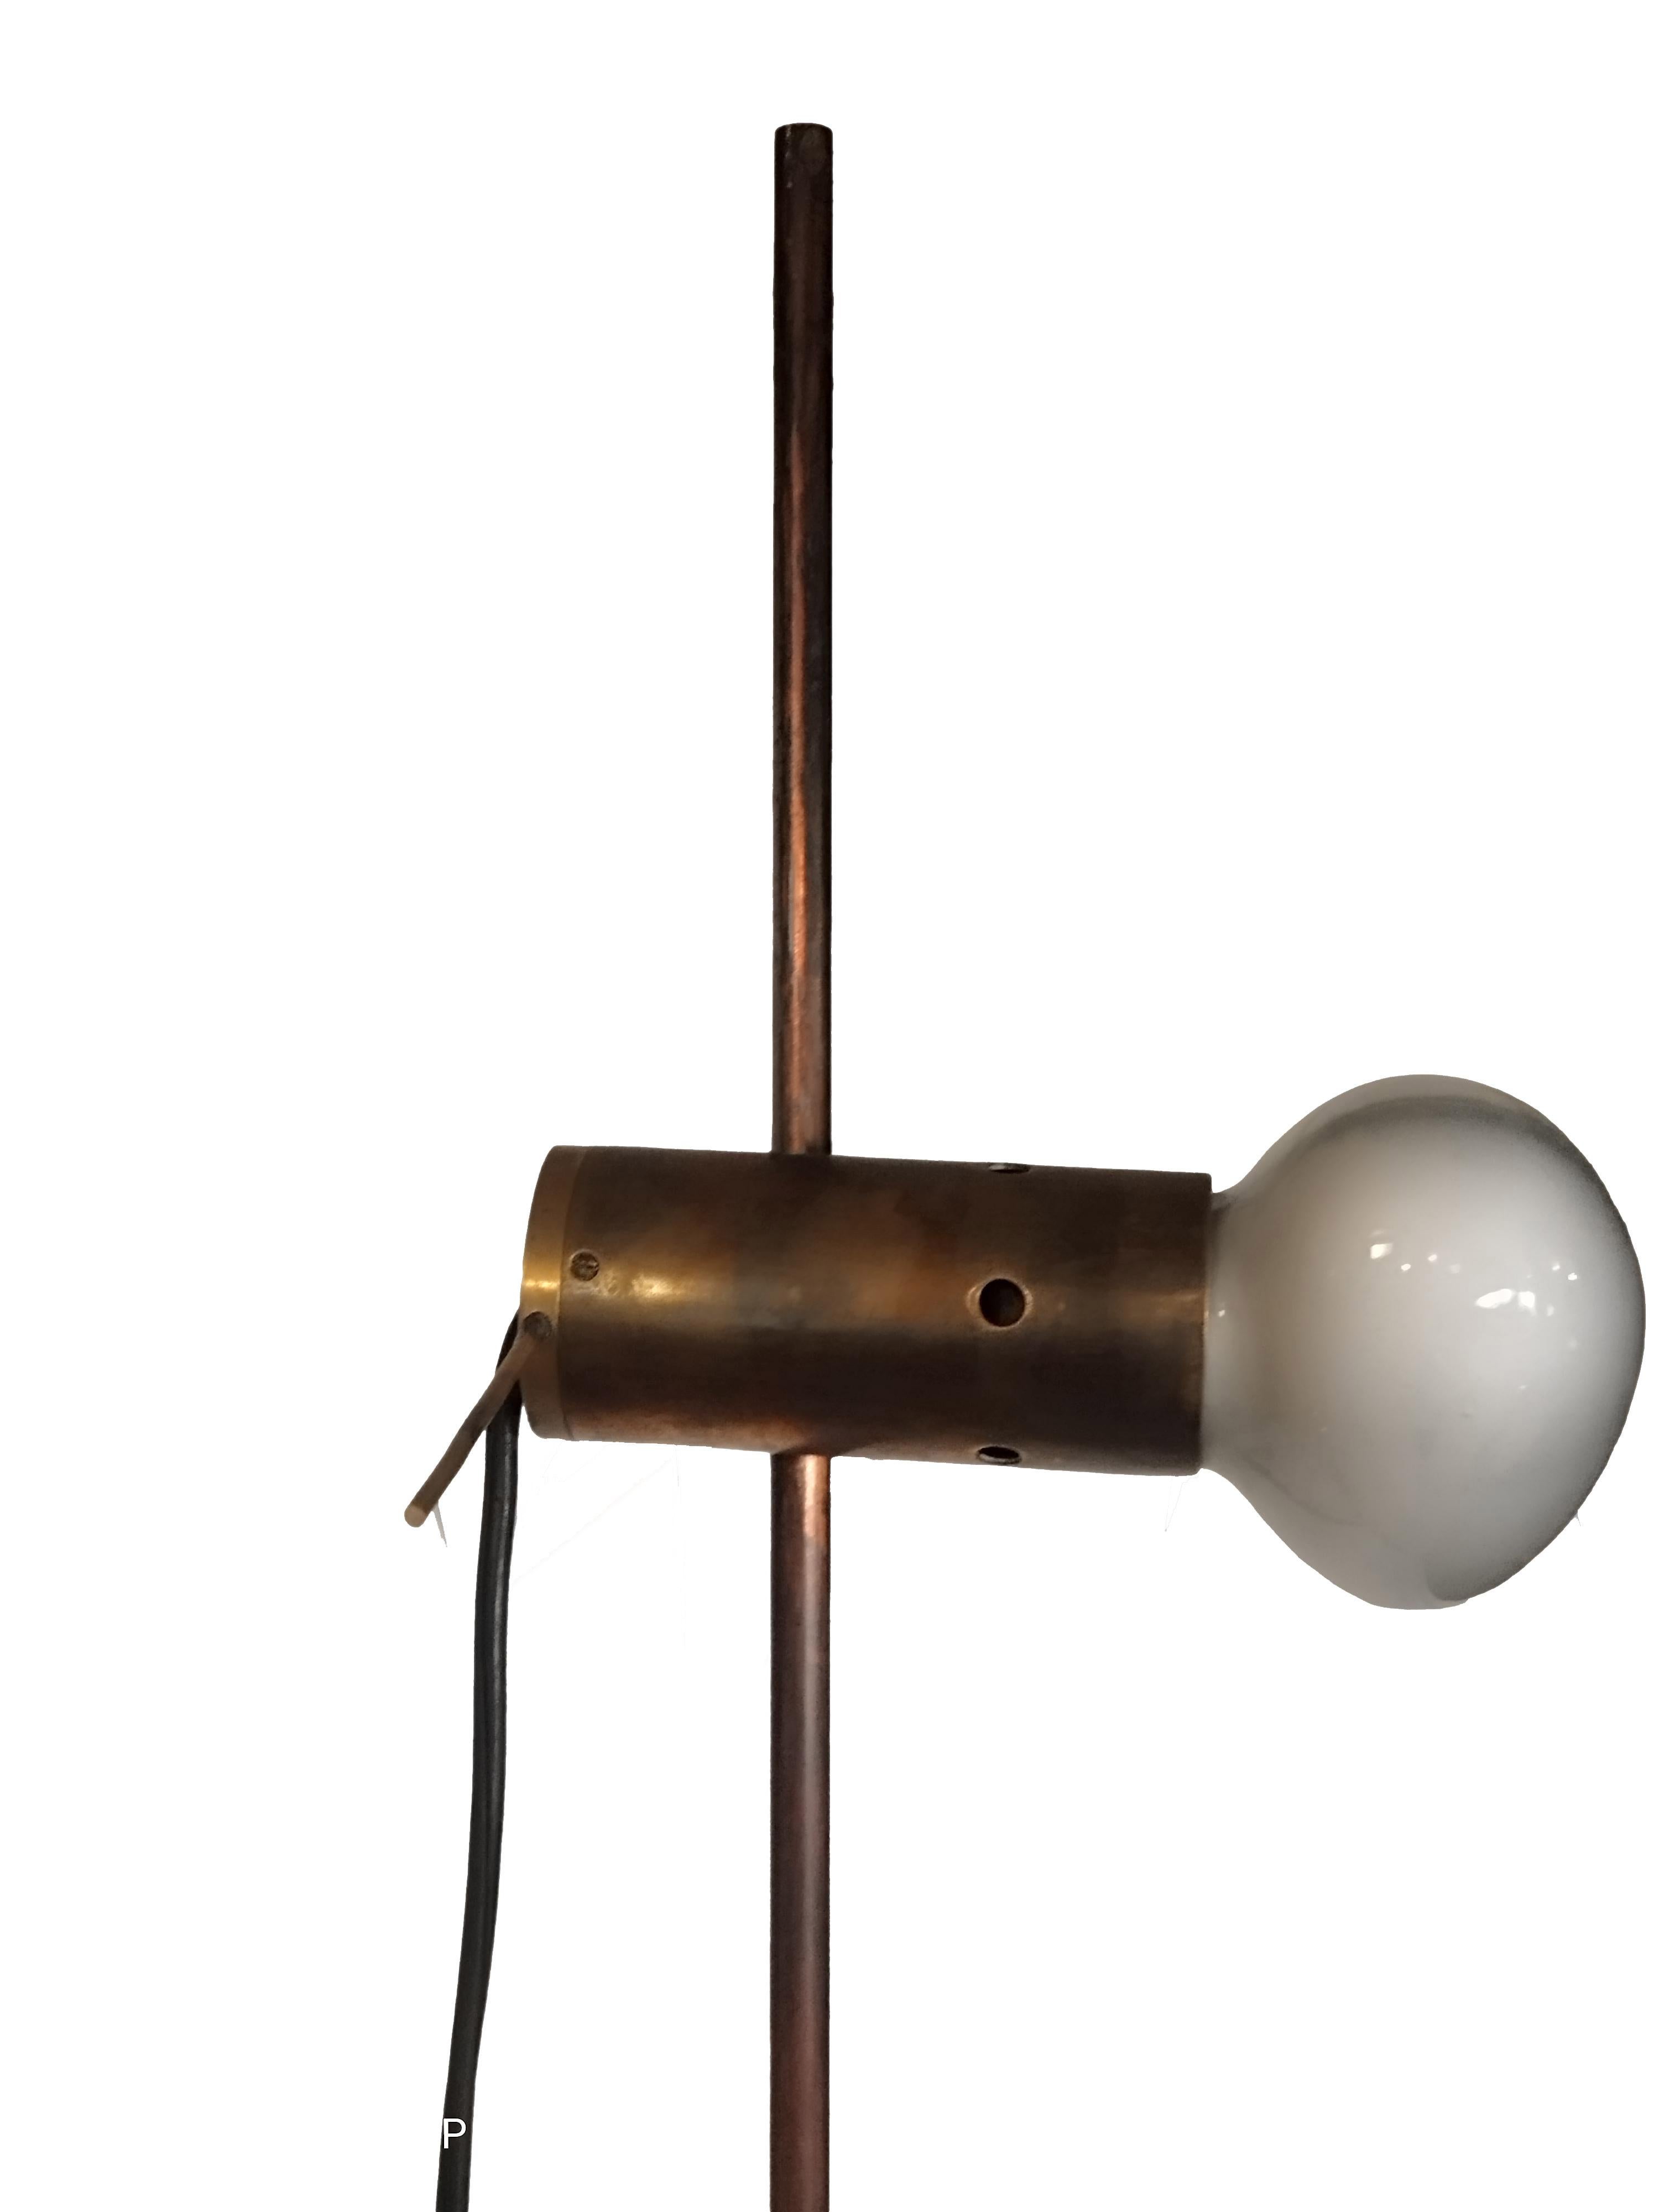 Lampadaire emblématique conçu par le designer italien Tito Agnoli pour la société Oluce dans les années 1960. Base en travertin et cadre en métal nickelé. Diffuseur réglable en hauteur.
